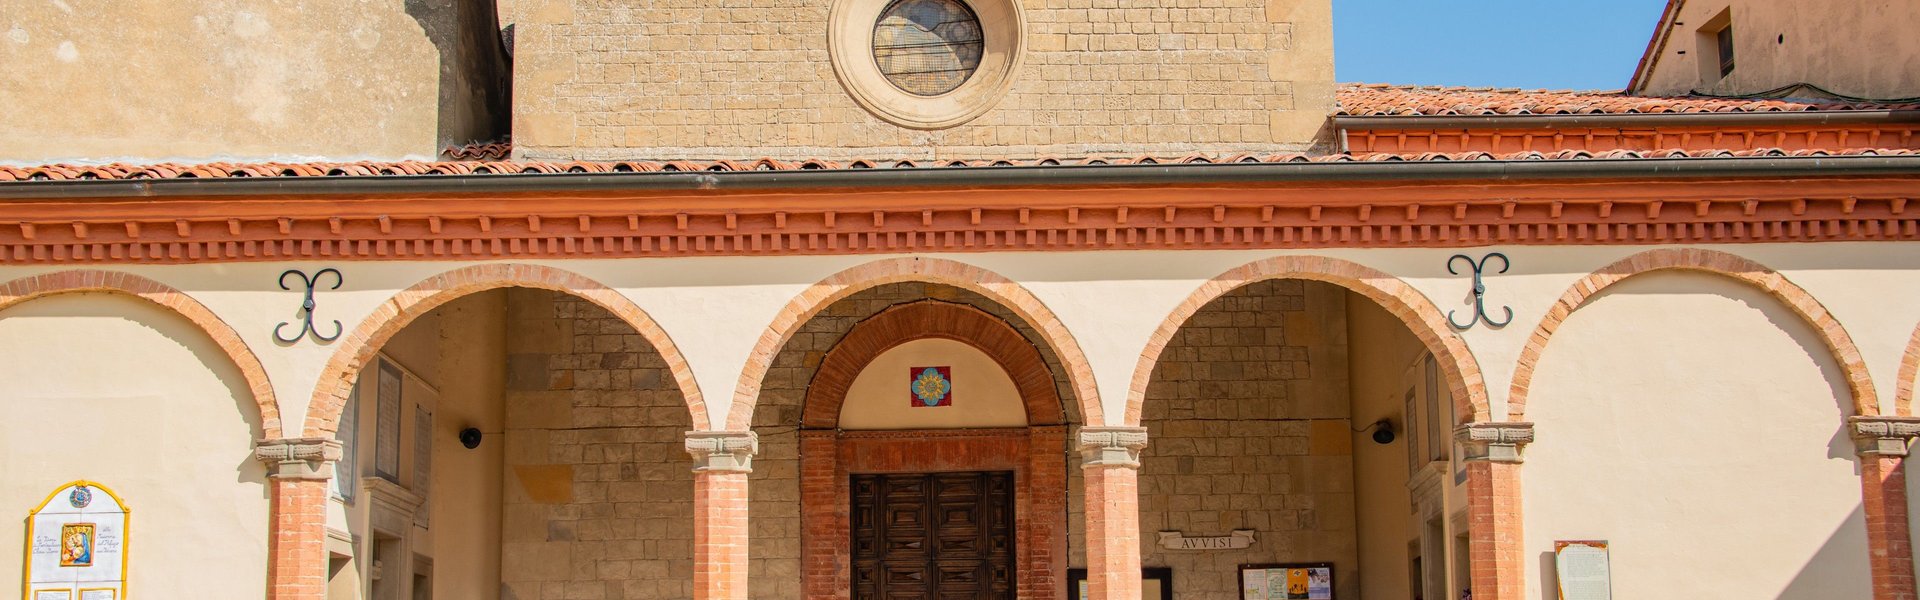 Convento di San Bernardino. Esterno